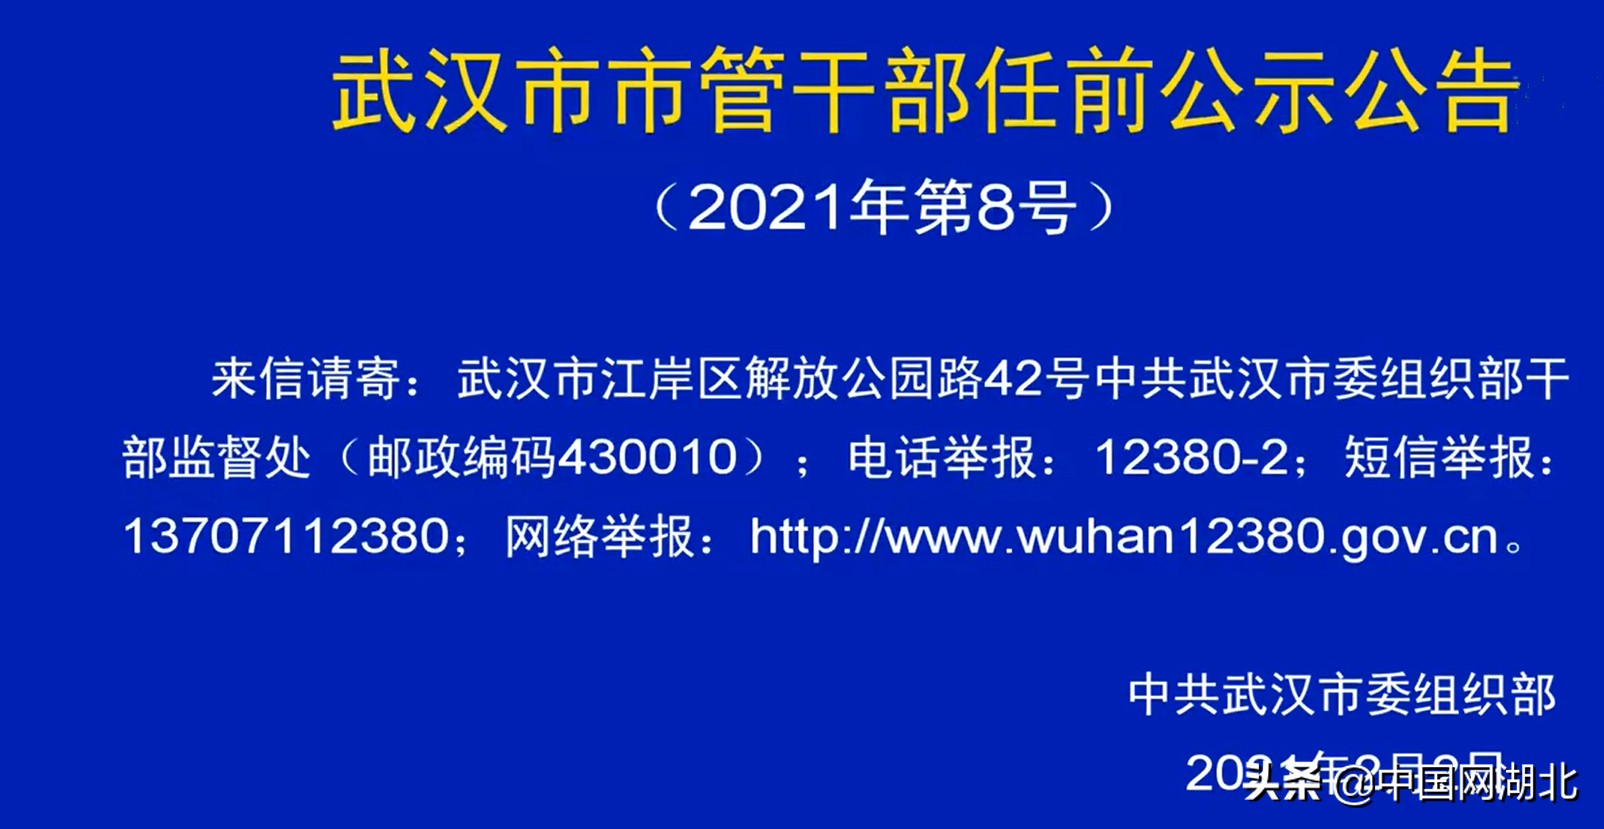 武汉发布最新市管干部任前公示公告2021年第8号